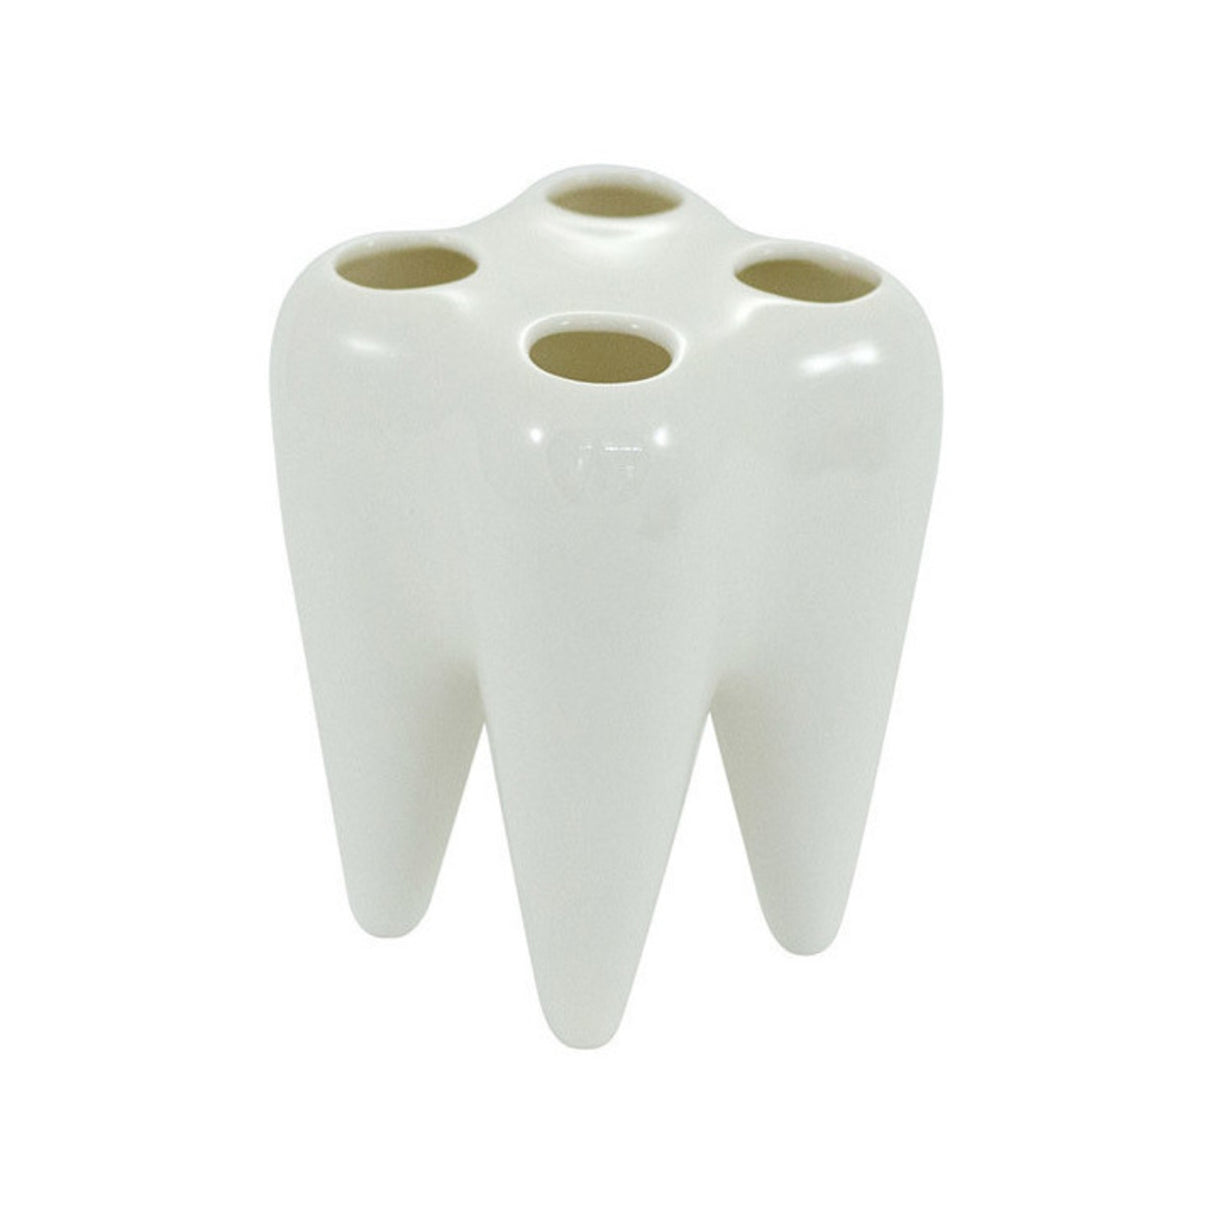 Keramik Zahnbürstenhalter - Kaufe jetzt und spare! –